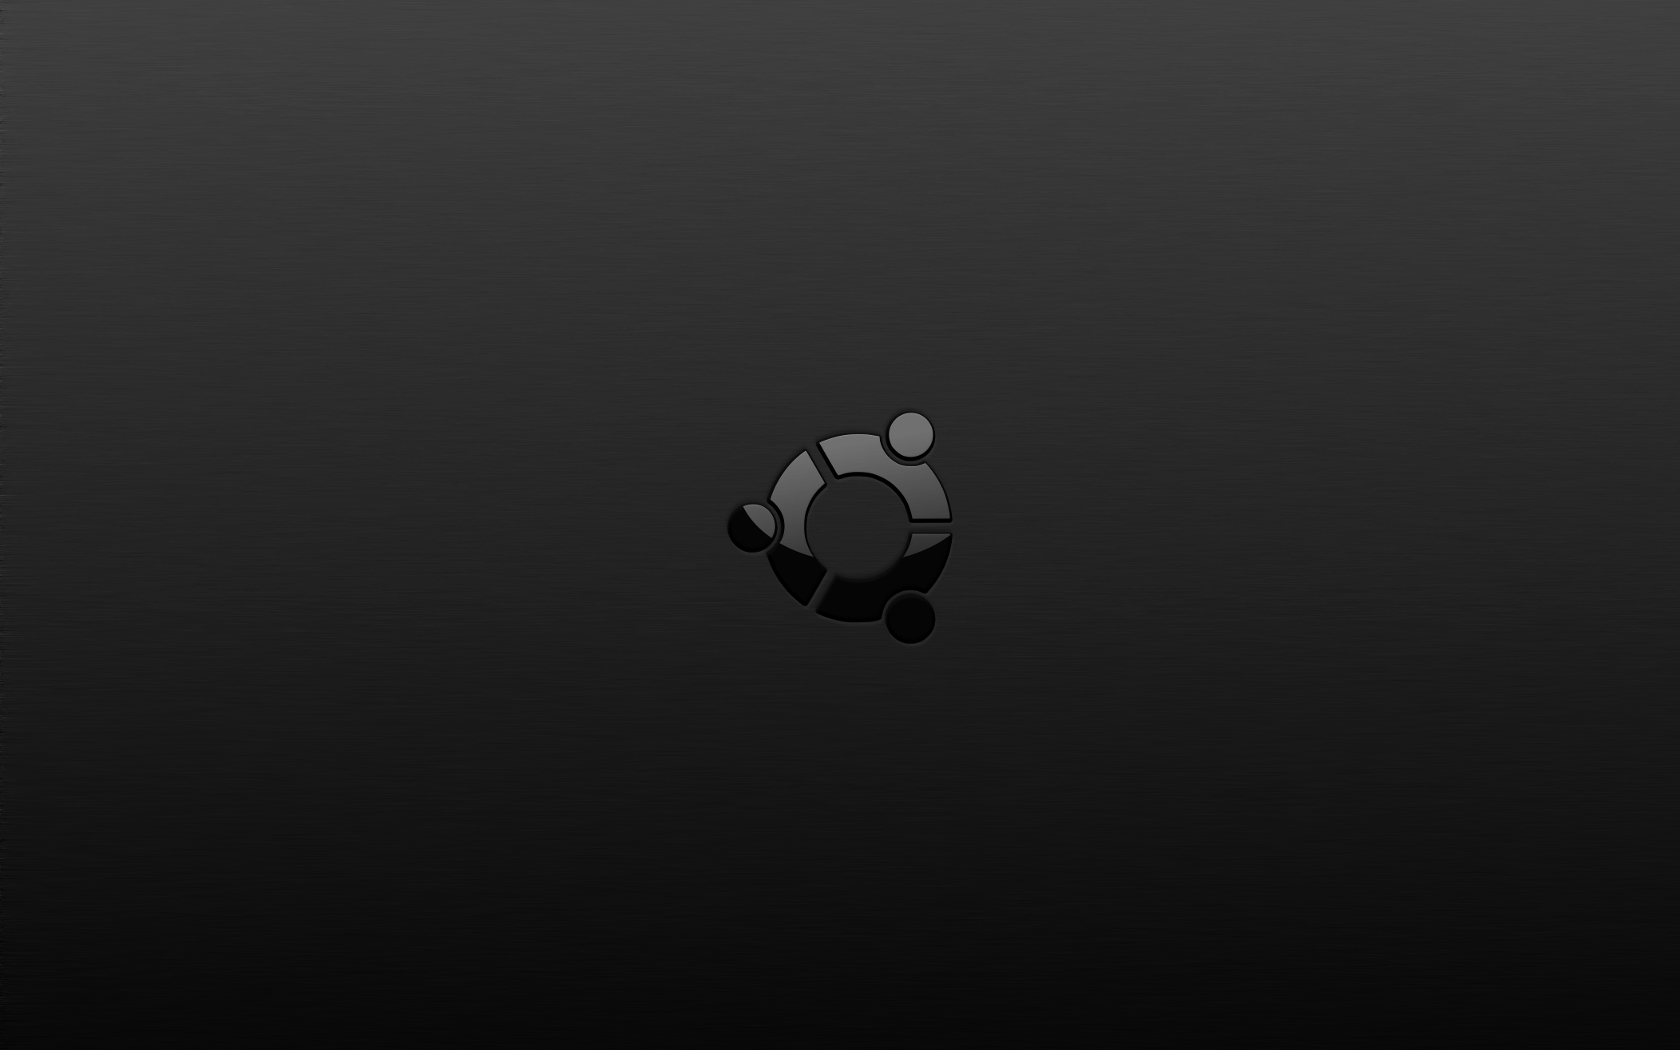 Hãy xem bức ảnh đen trắng nền Ubuntu này để cảm nhận vẻ đẹp tối giản của hệ điều hành này. Sự kết hợp giữa màu đen trang trọng và biểu tượng Ubuntu sẽ khiến bạn ấn tượng ngay từ cái nhìn đầu tiên.